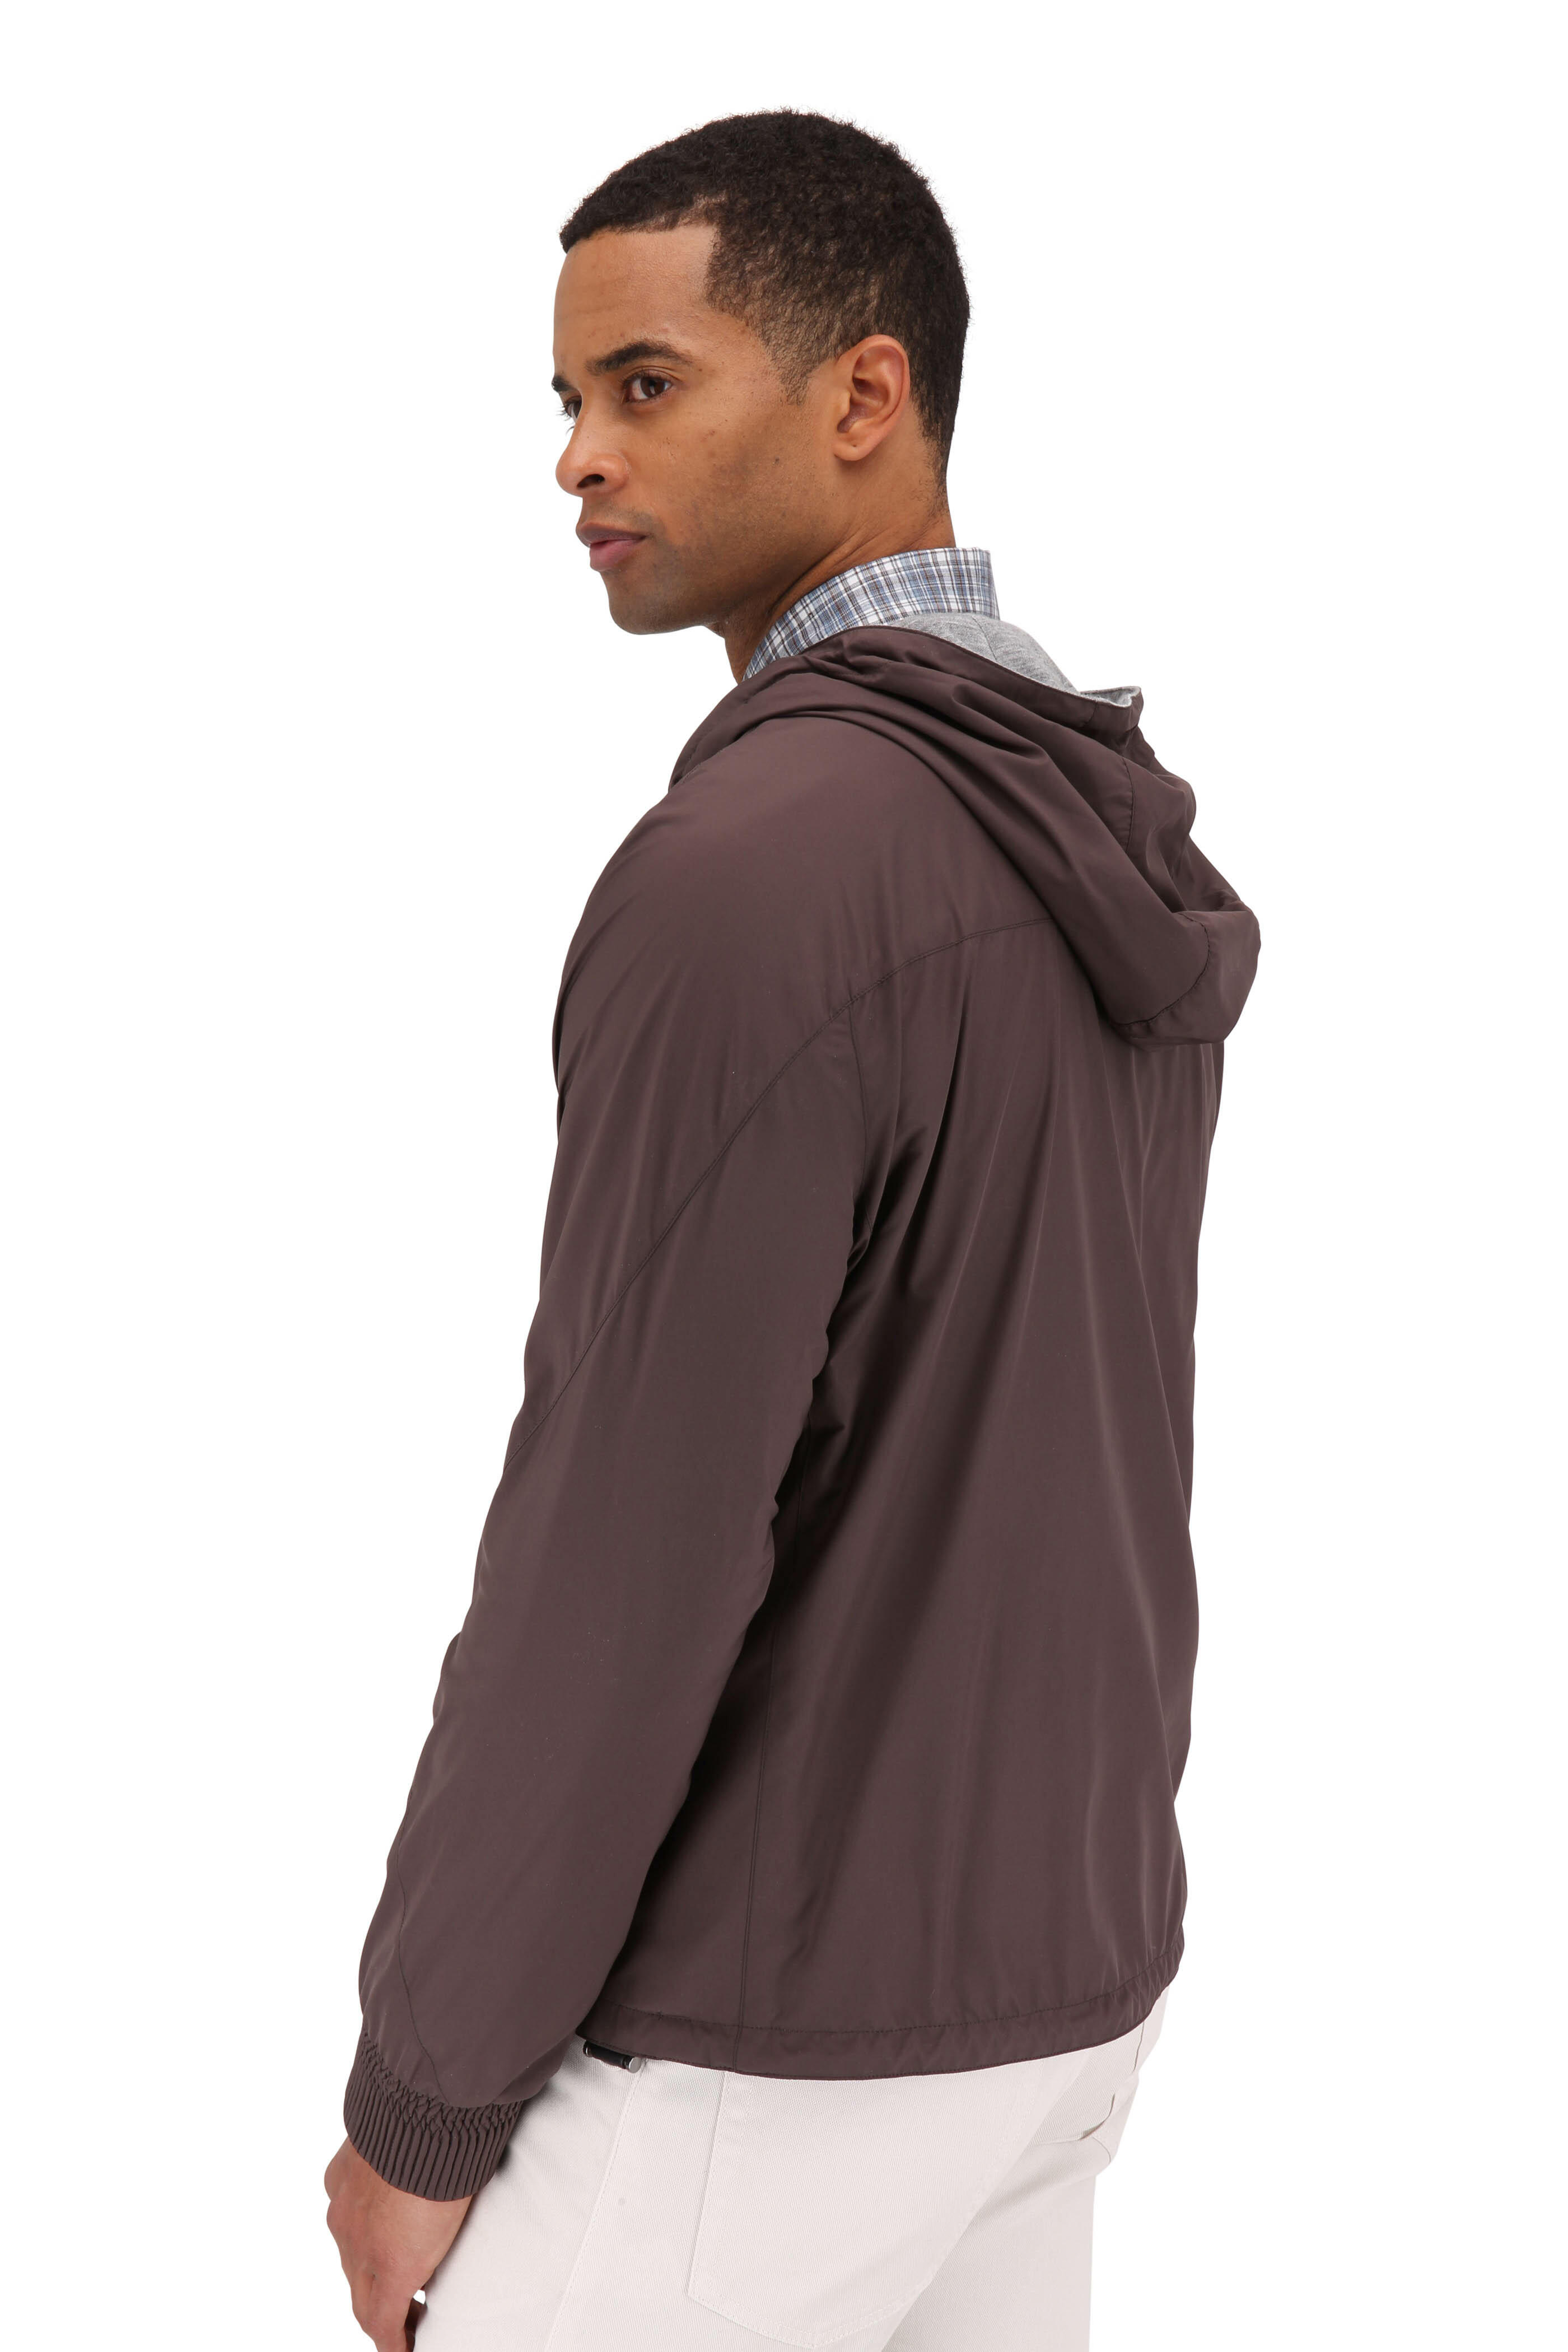 Zegna - Breeze Breaker Brown & Gray Reversible Jacket